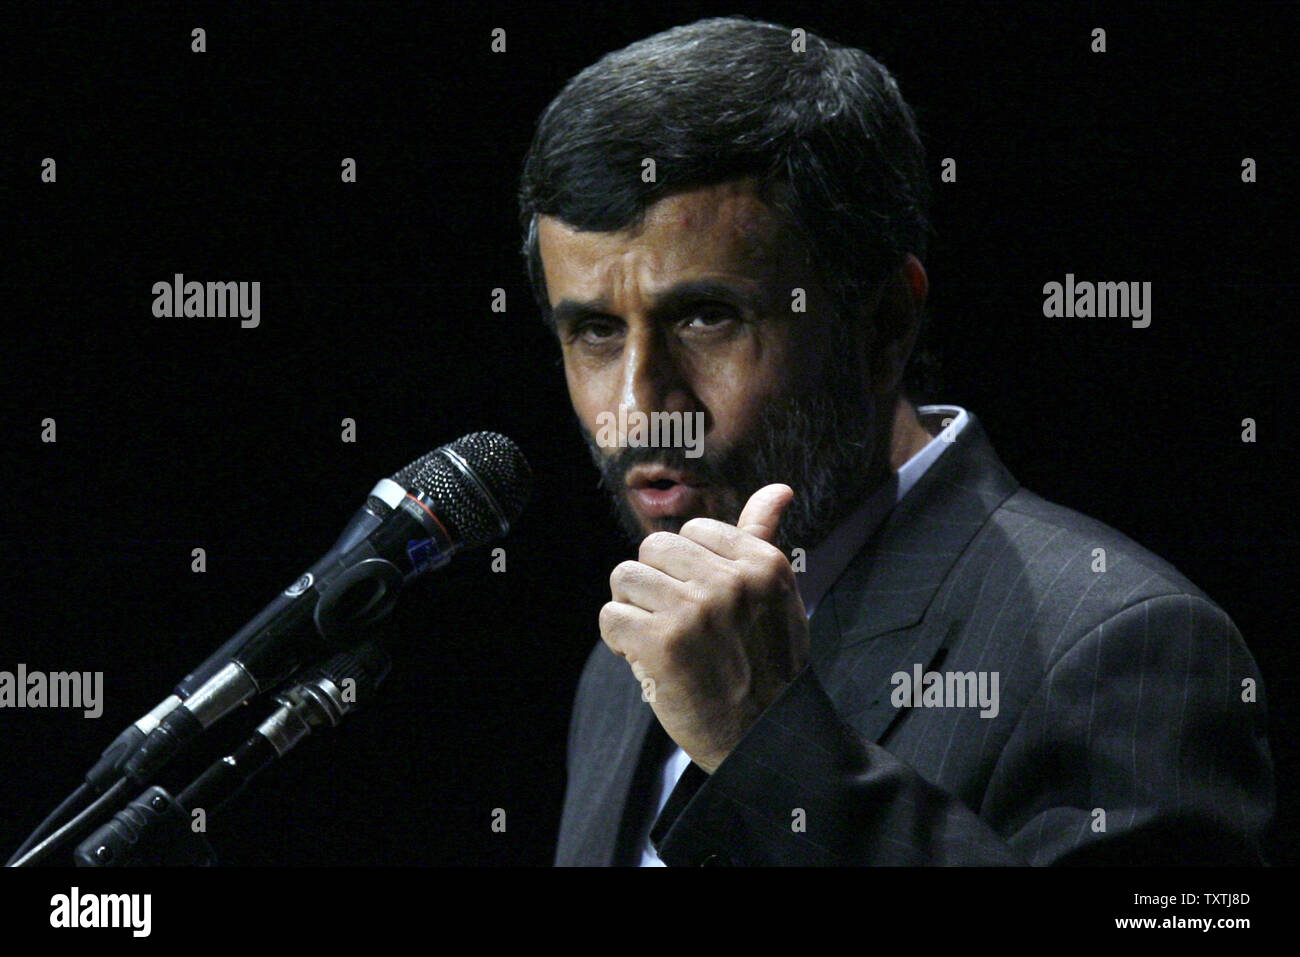 Der iranische Präsident Mahmud Ahmadinedschad spricht nach der dritten Generation im Inland gebaut Zentrifugen als Teil der Programm zur Anreicherung von Uran des Landes vorgestellt wurde und Markierung der 4. Nationalen Jahrestag der Kerntechnik in Teheran, Iran, dem 9. April 2010. UPI/Maryam Rahmanian. Stockfoto